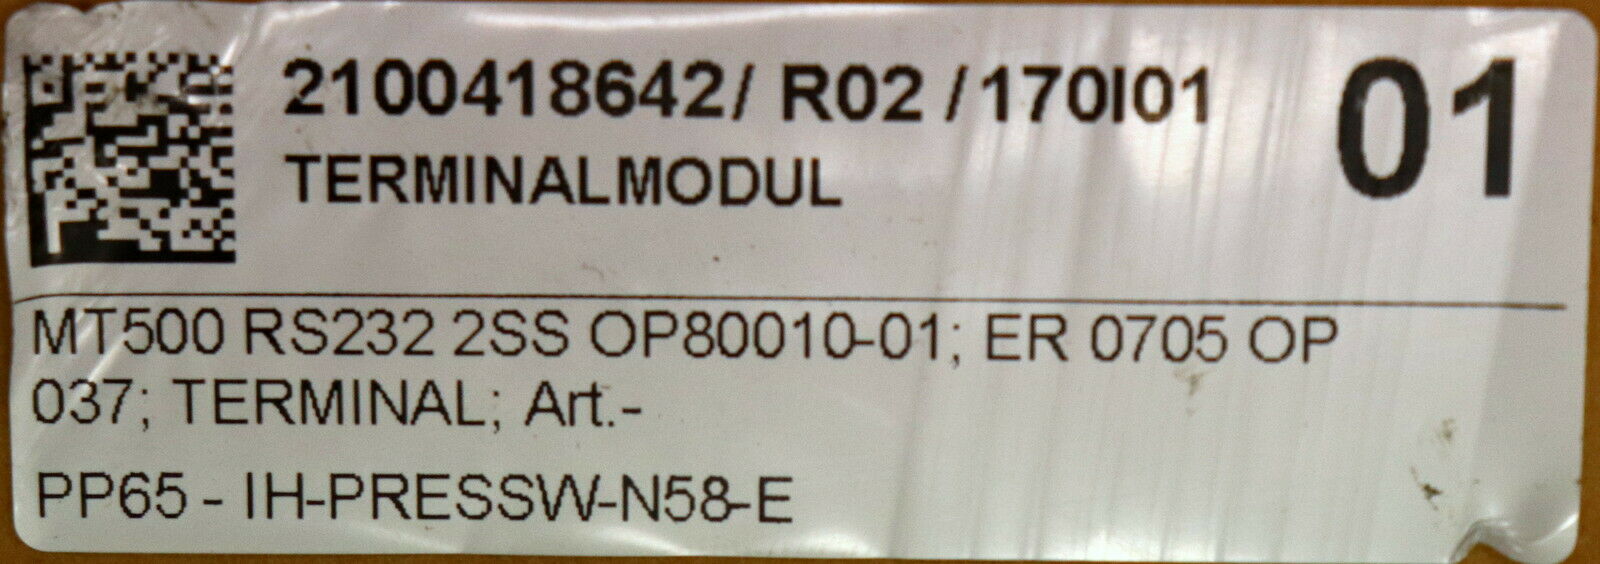 INDUMAT Terminalmodul MT500 Bediengerät für R232 2SS OP80010-01 ER 0705 OP 037